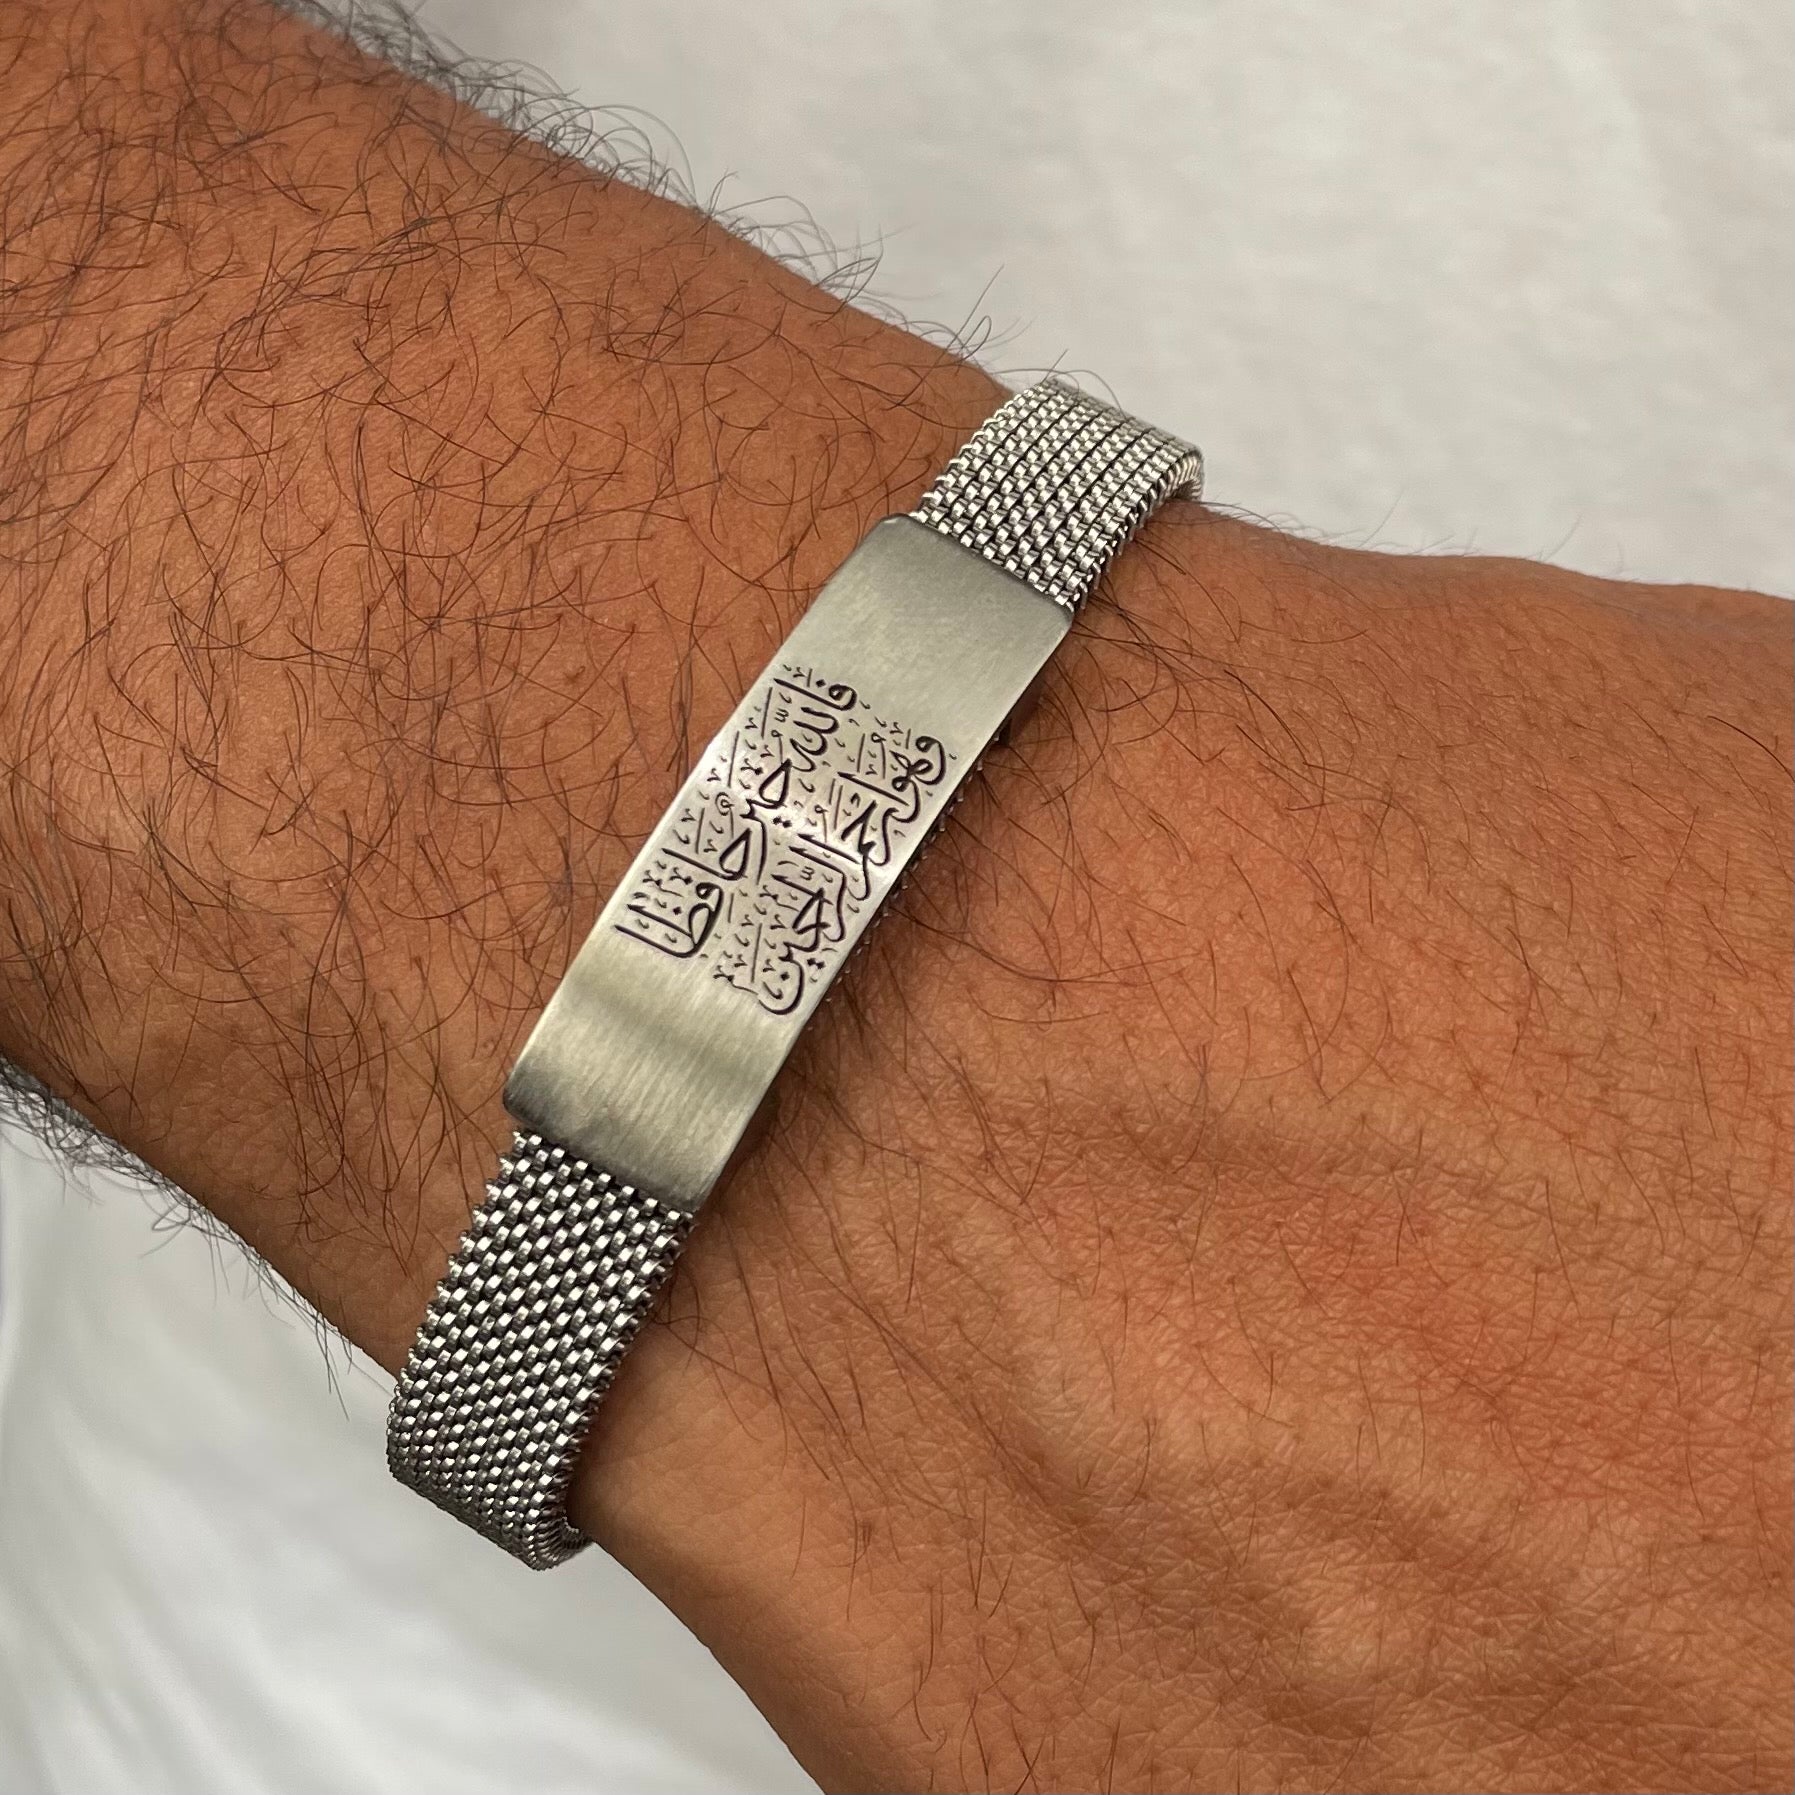 Silver Engraved Steel Bracelet Black – Tamaraataalijewelry